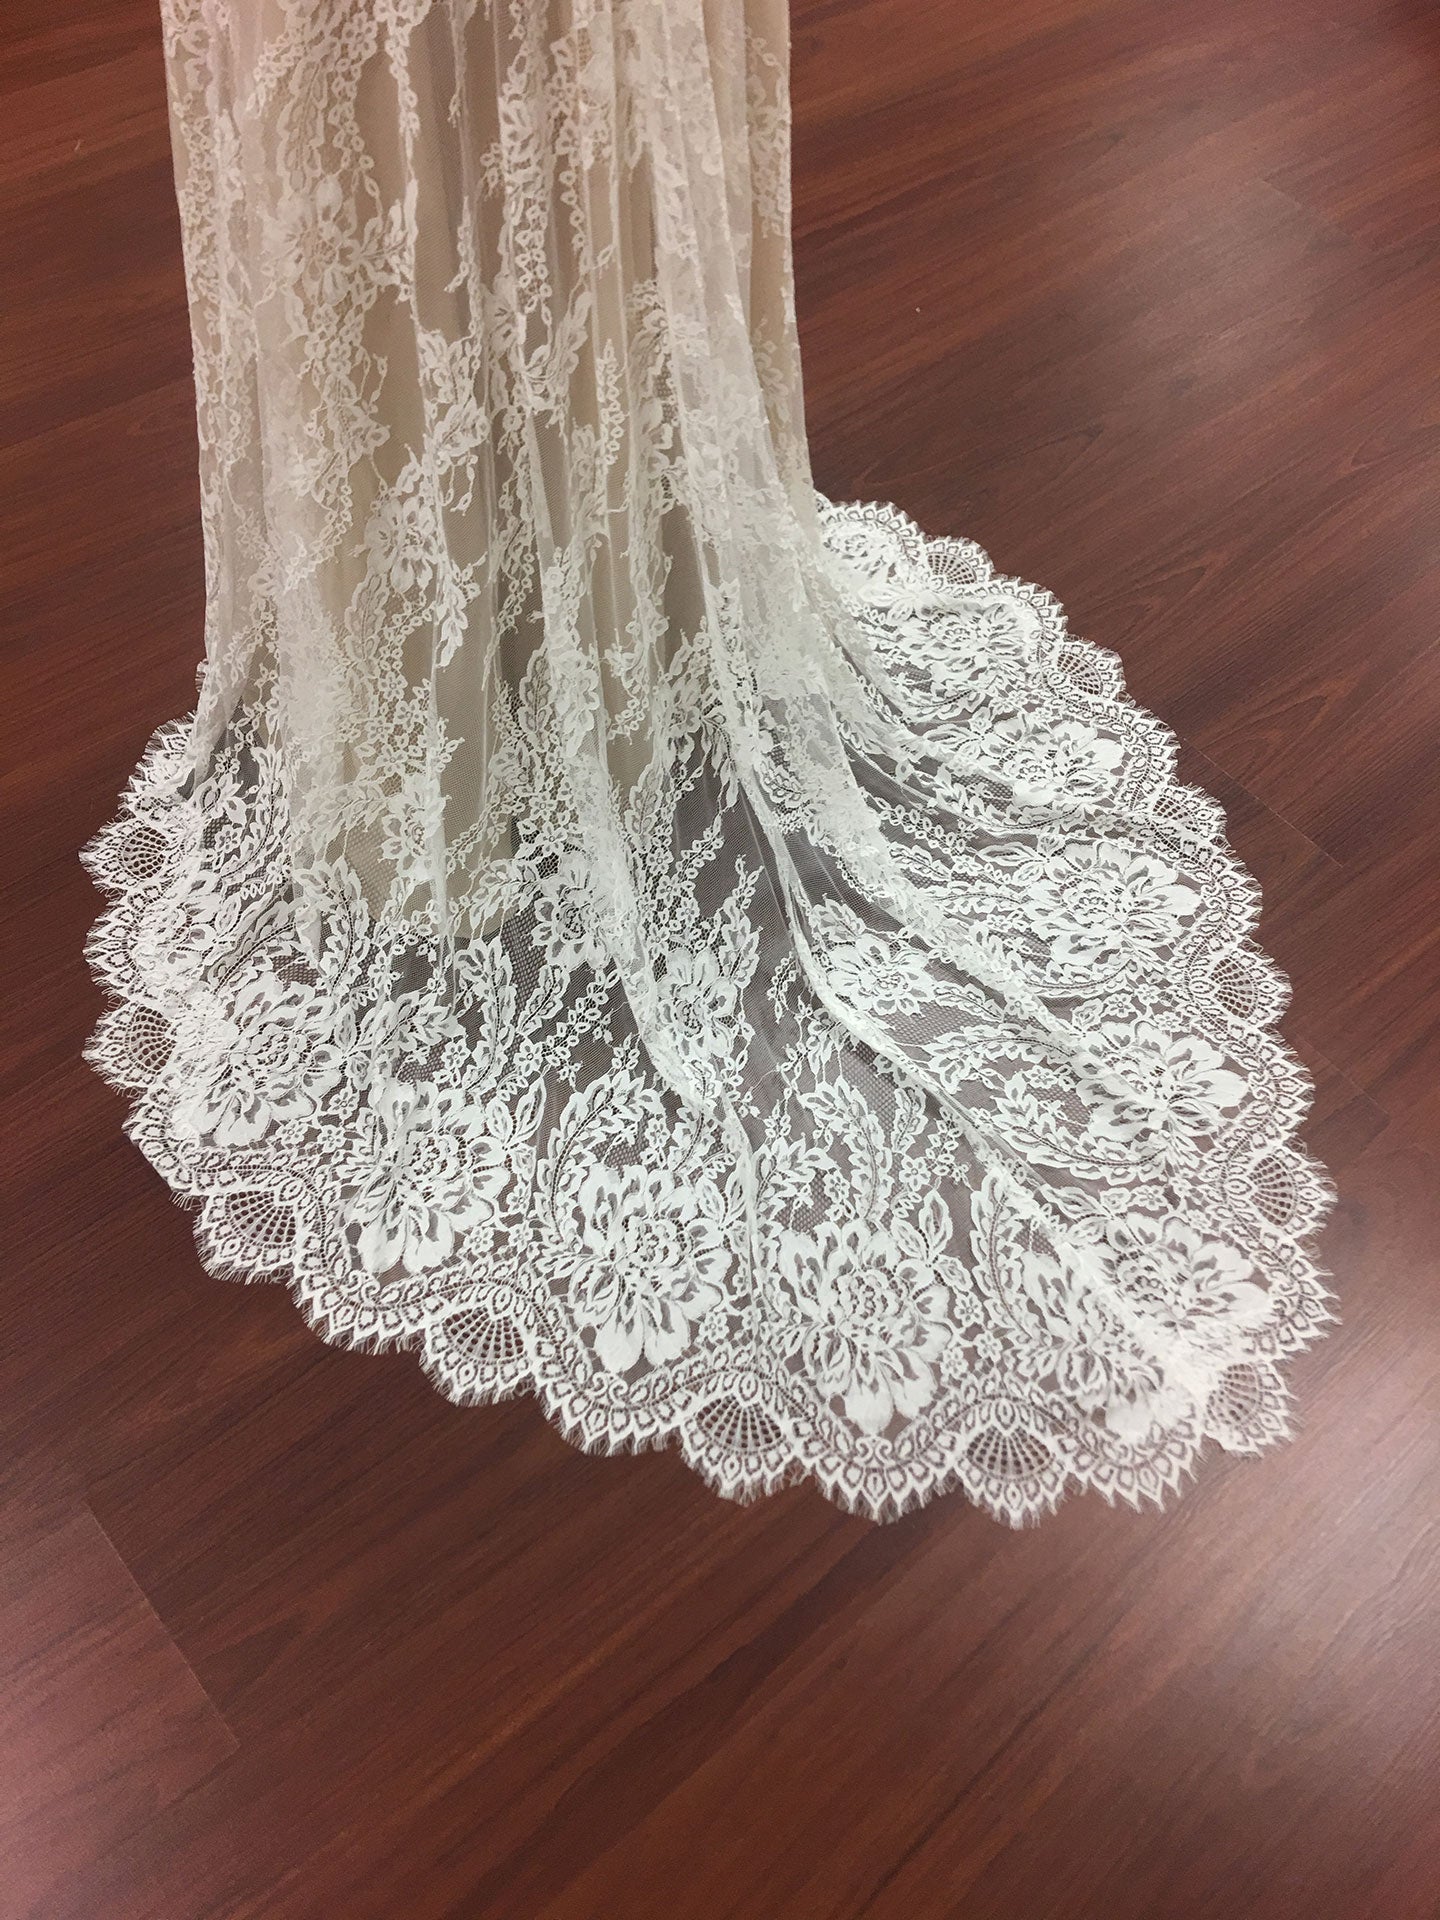 Boho style strapless lace wedding dress